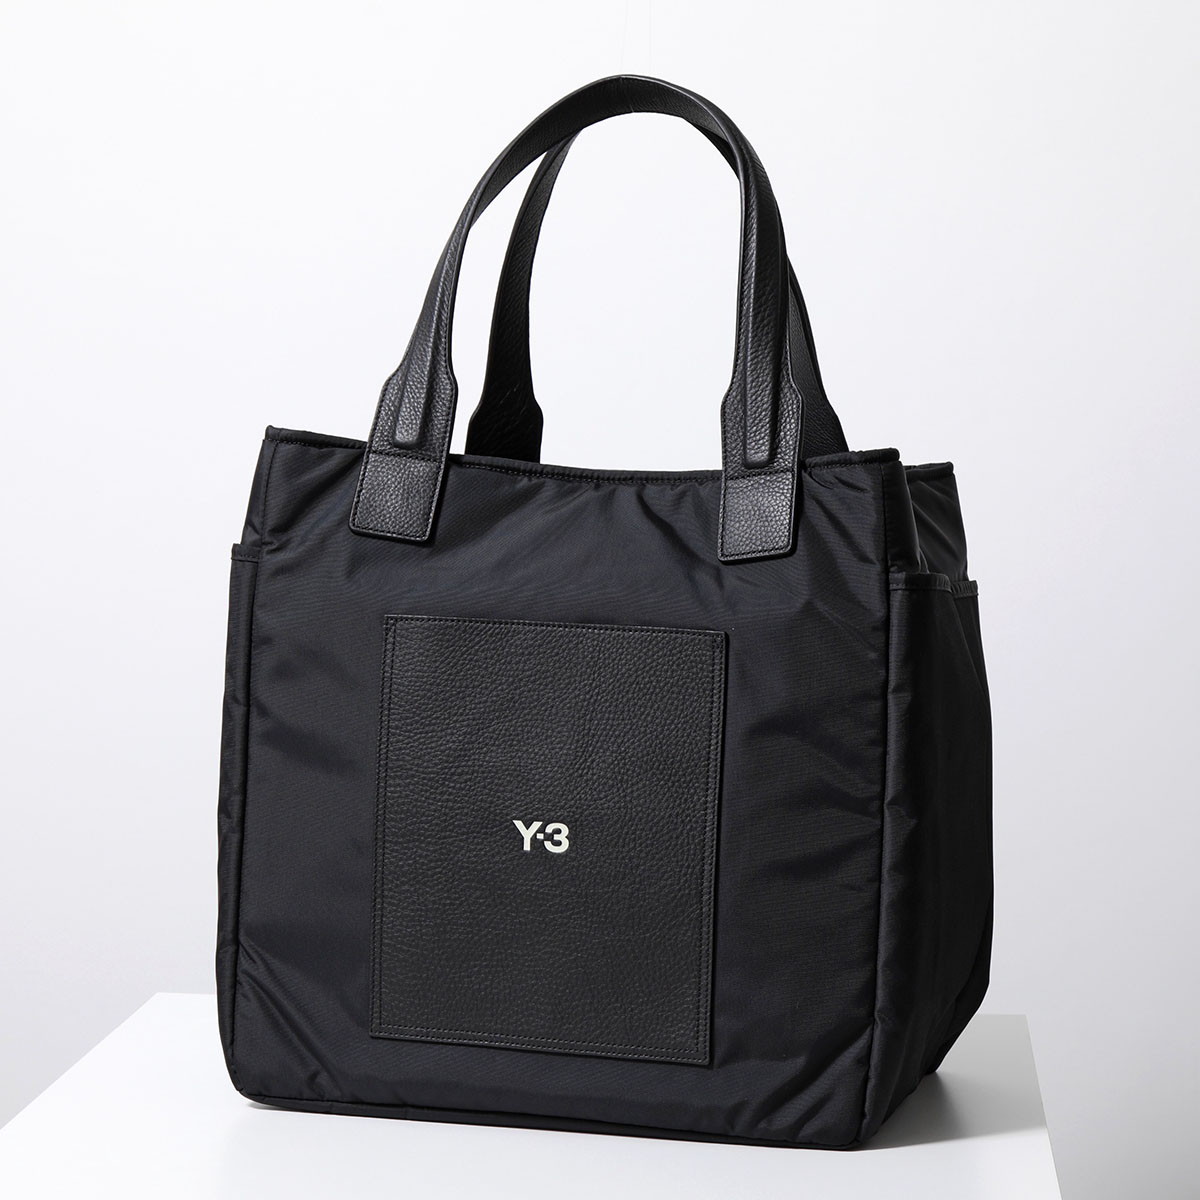 Y-3 ワイスリー トートバッグ LUX BAG IY0098 IY0099 メンズ ナイロン×レザー ロゴ ショッピングバッグ 鞄 カラー2色